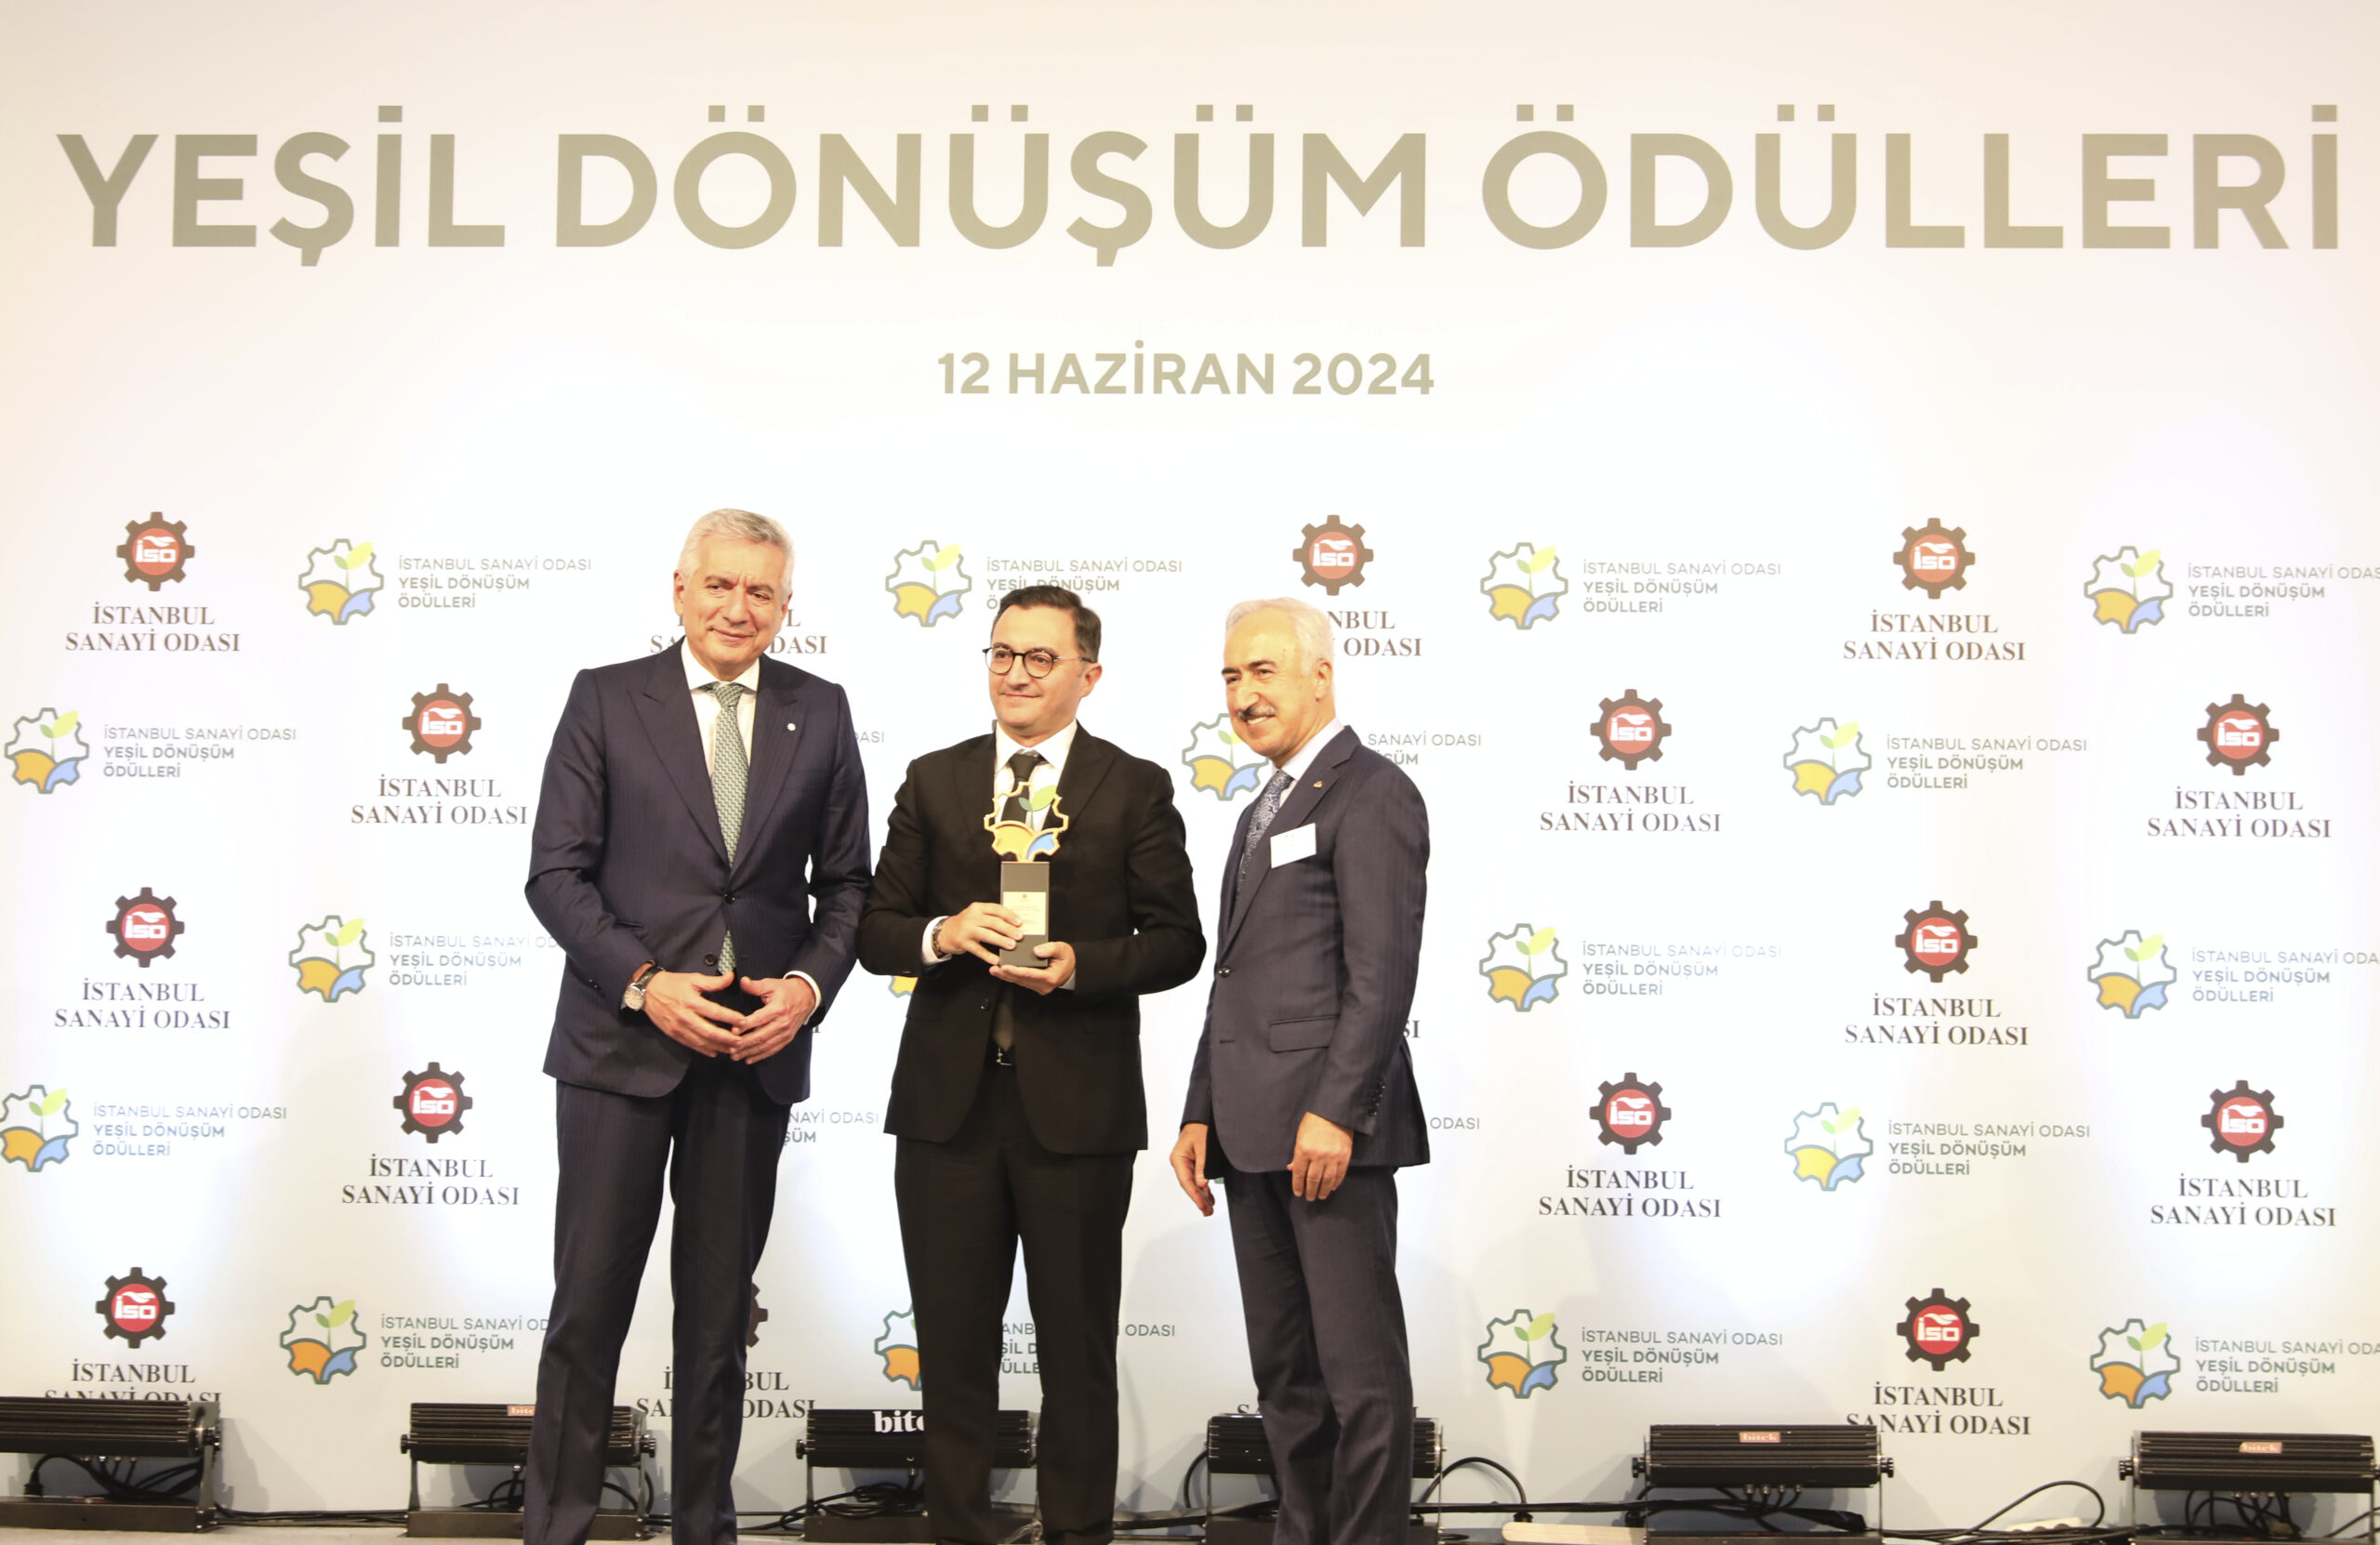 Çimsa, ISO Yeşil Dönüşüm Ödülleri’nde “Sürdürülebilirlik Yönetimi” kategorisinde ödül aldı